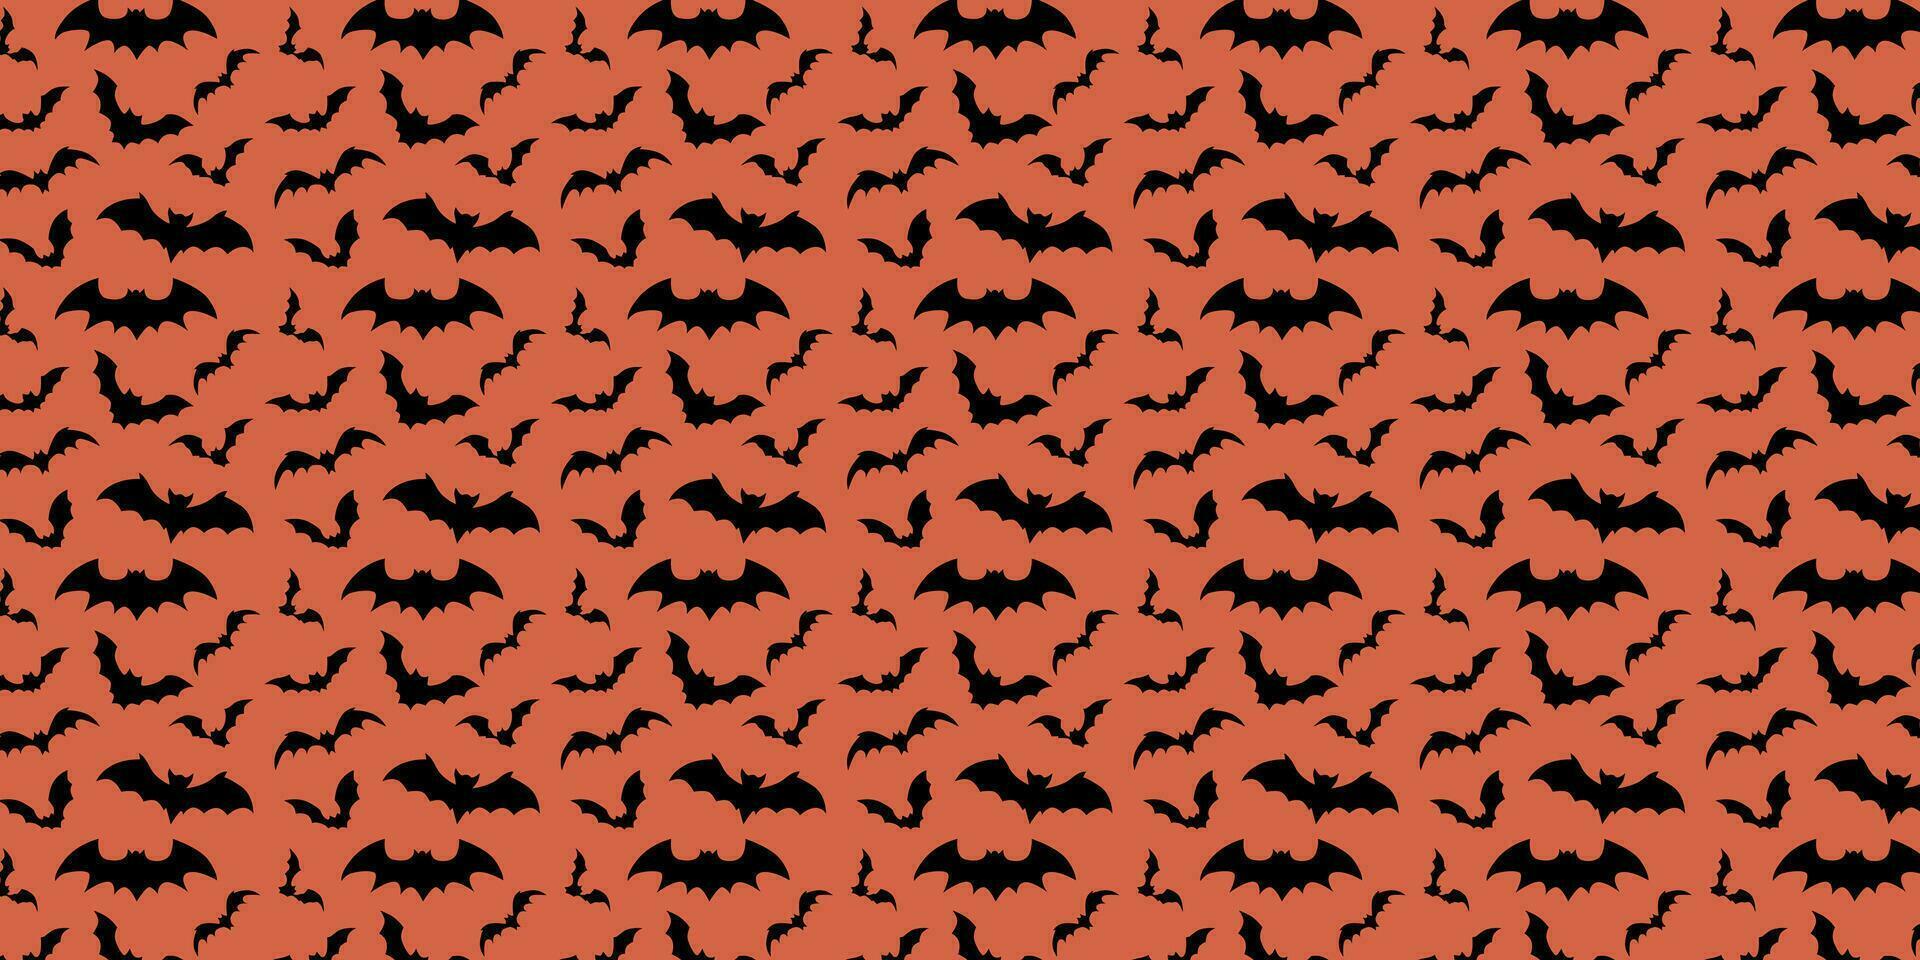 vleermuizen patroon voor halloween. silhouetten van vleermuizen in een naadloos patroon. vector illustratie